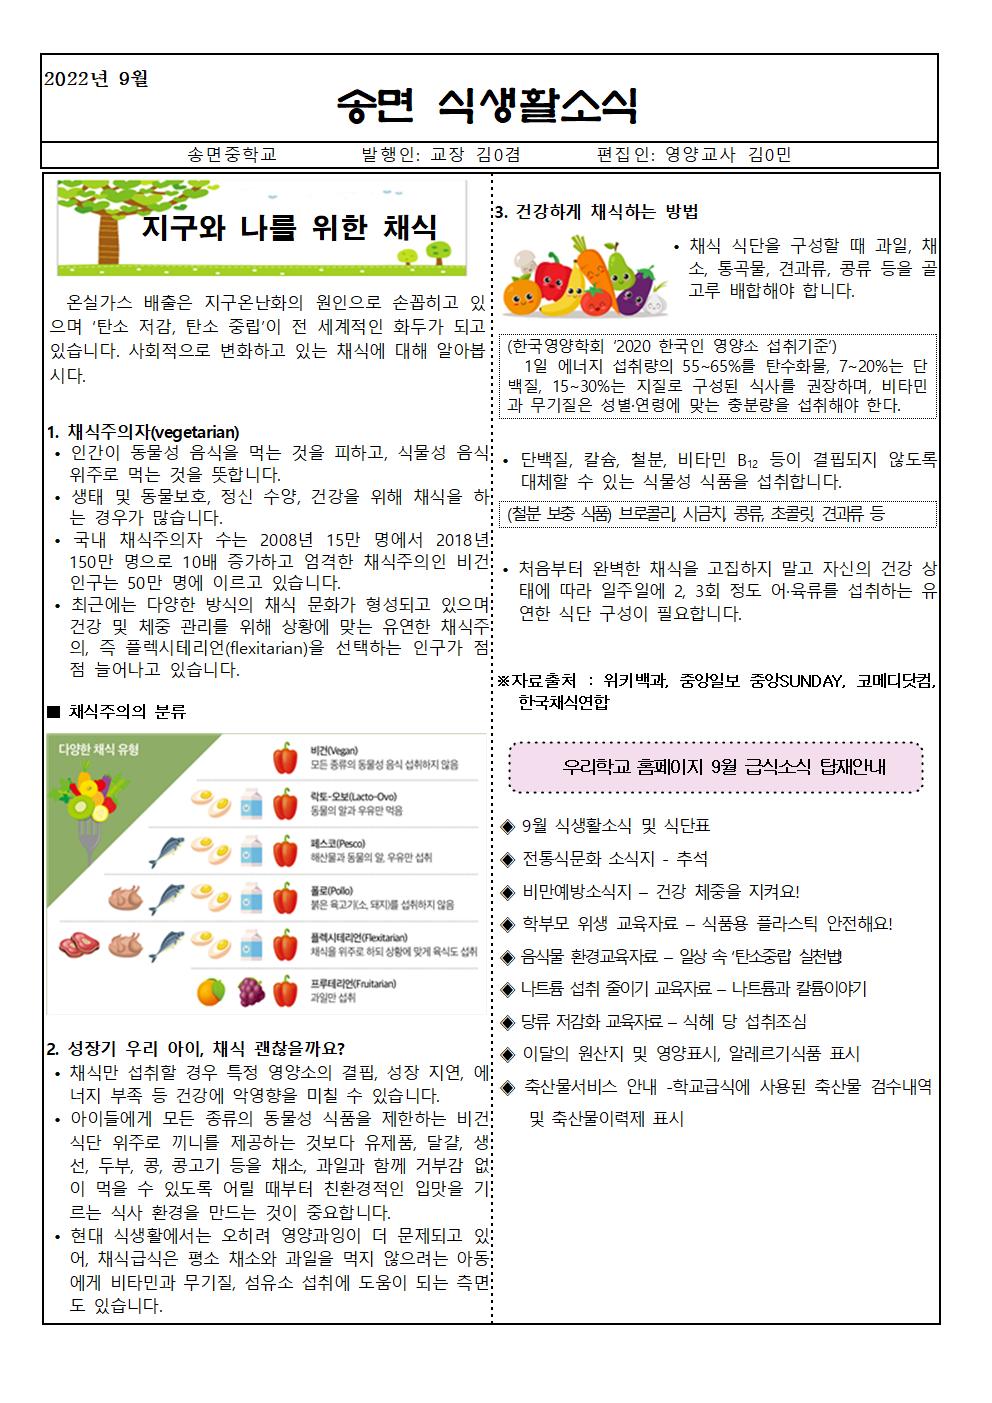 송면초등학교_9월 식생활소식지_m001